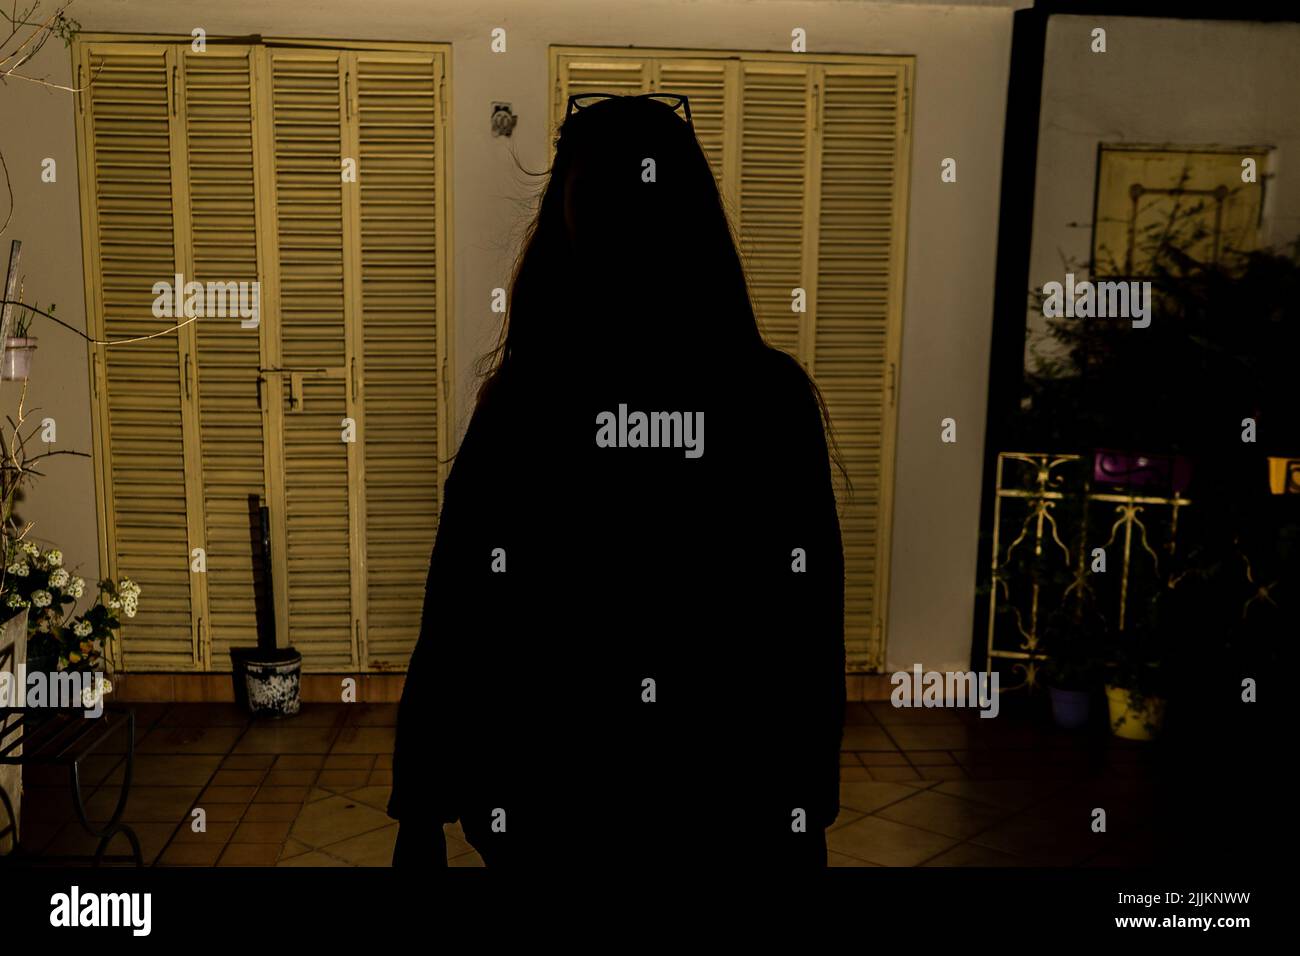 Frontale Aufnahme der Silhouette einer Person, die nachts steht Stockfoto